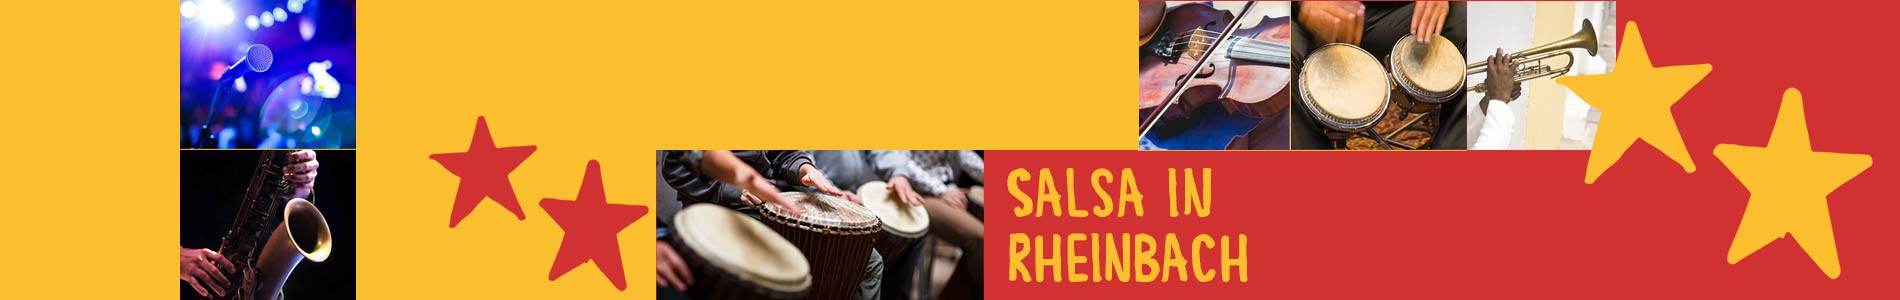 Salsa in Rheinbach – Salsa lernen und tanzen, Tanzkurse, Partys, Veranstaltungen